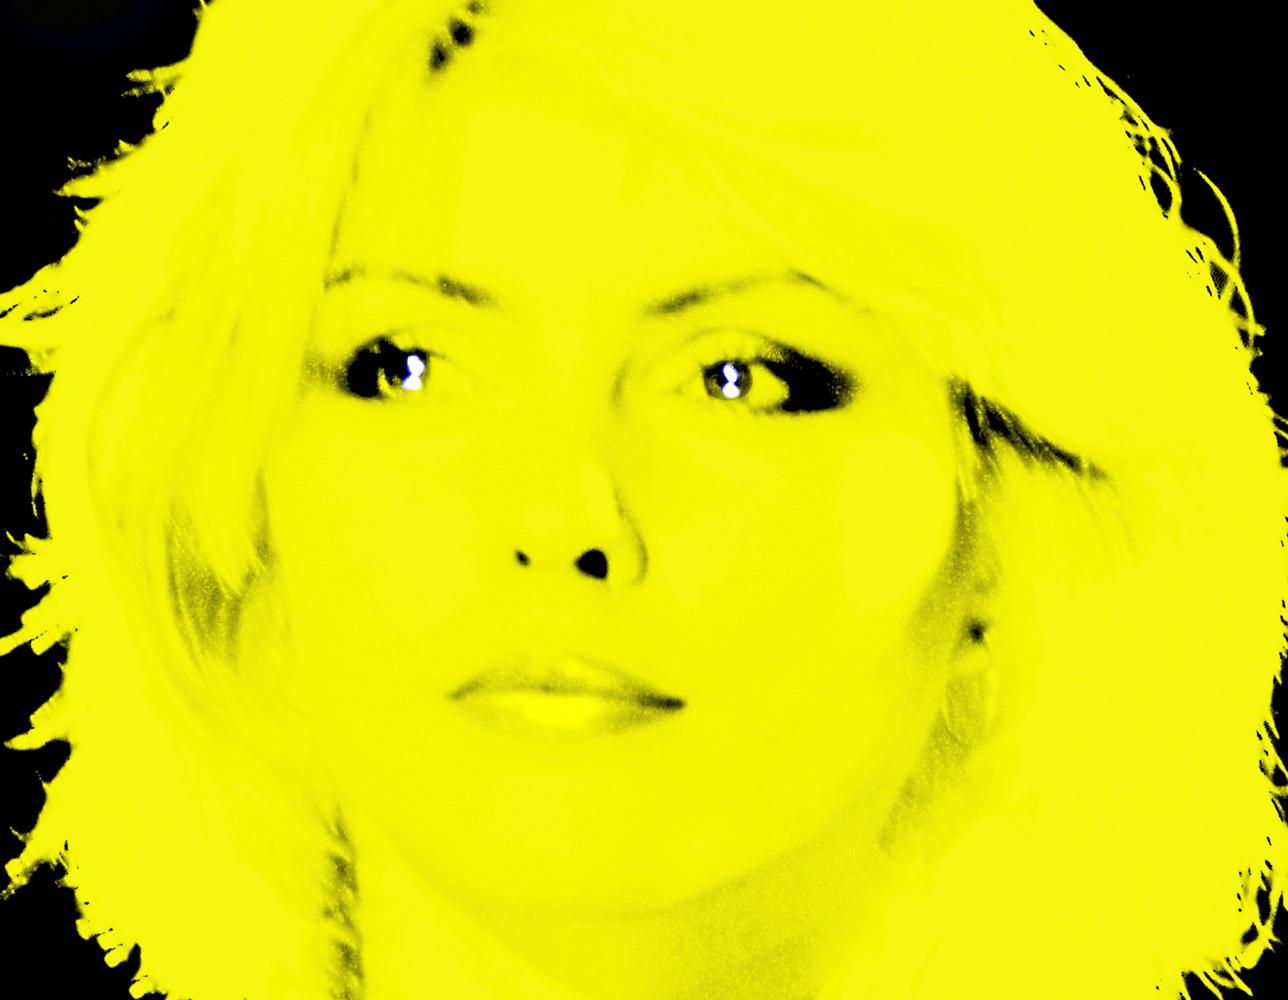 BATIK Portrait Print - Lemon Blondie - Signed Limited Edition